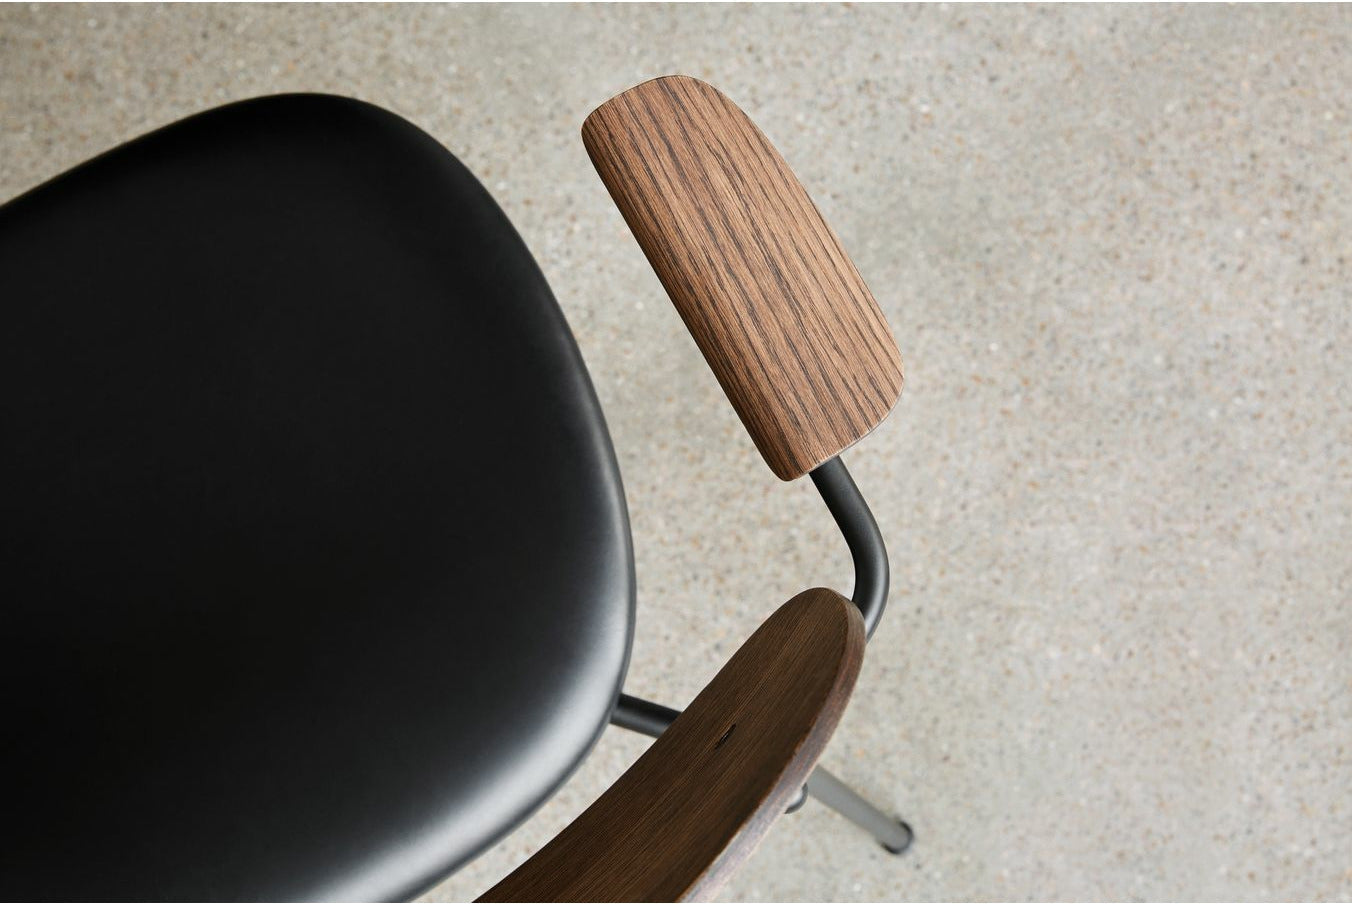 Audo Copenhagen Co Food Chair polstret sæde med armlæn mørk farvet eg, sort/Dakar 0842